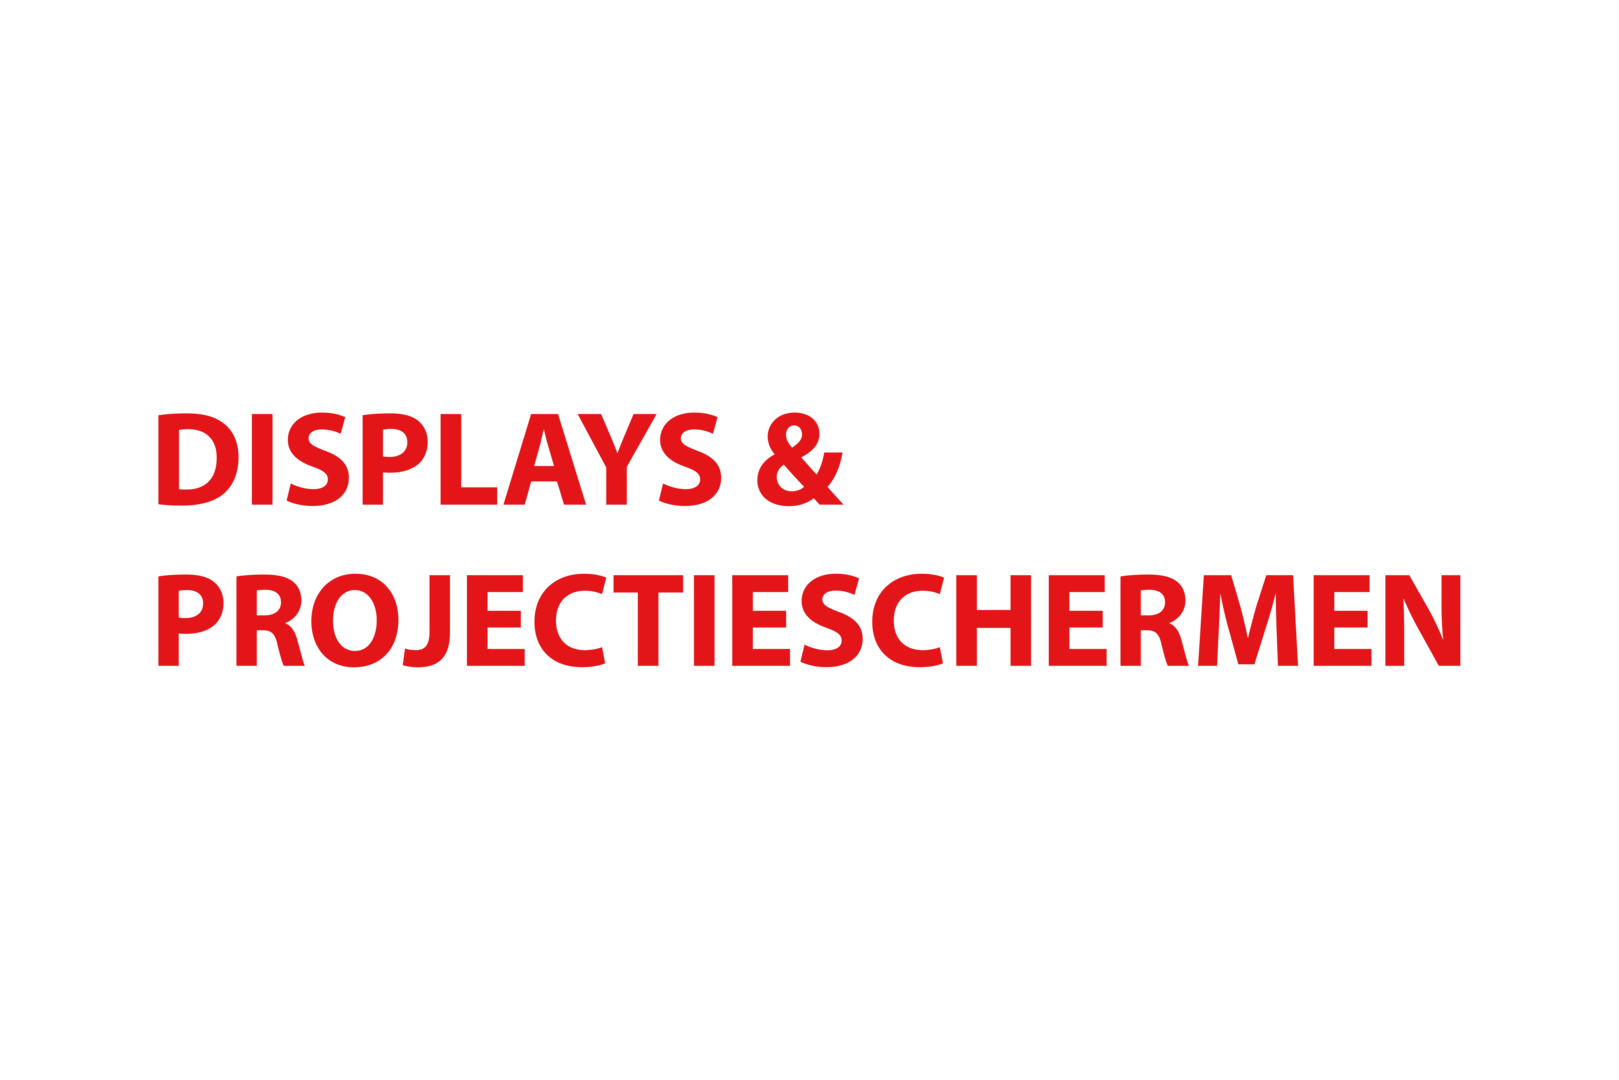 Displays & projectieschermen